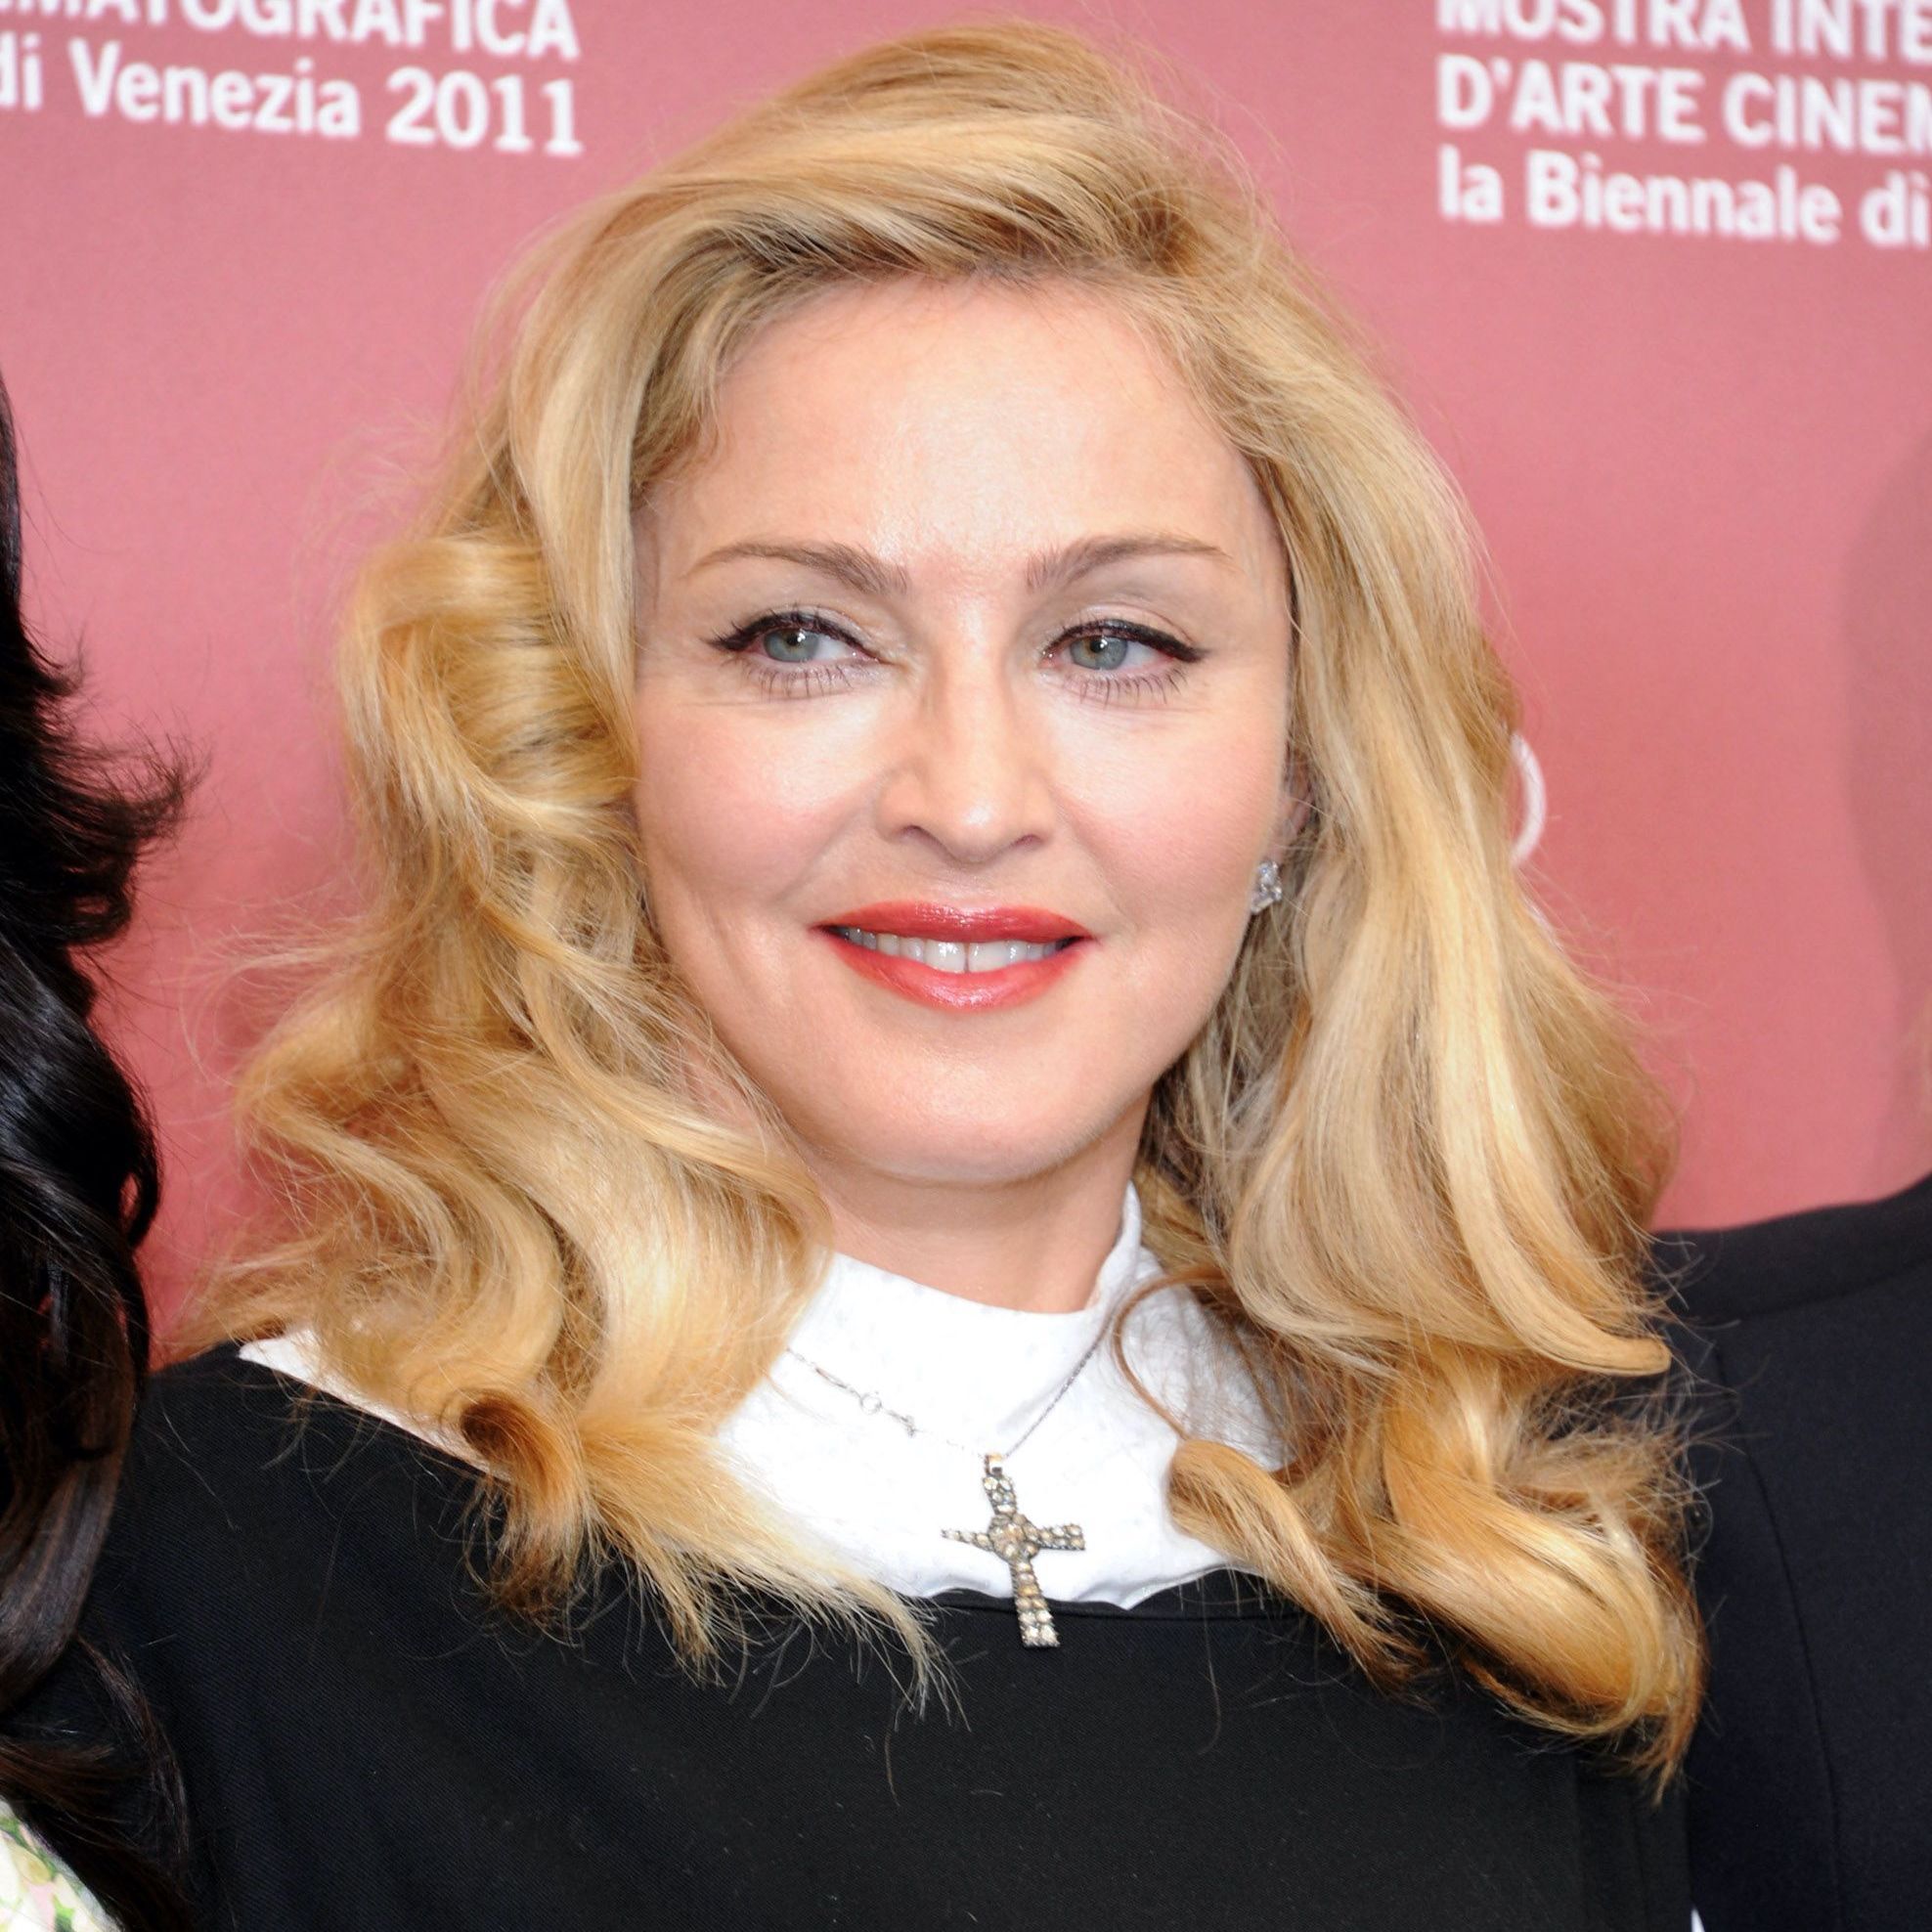 https://cdn-elle.ladmedia.fr/var/plain_site/storage/images/beaute/cheveux/stars/madonna-devoile-ses-cheveux-roses-sur-instagram-et-ce-n-est-pas-un-filtre-3887766/93963394-1-fre-FR/Madonna-devoile-ses-cheveux-roses-sur-Instagram-et-ce-n-est-pas-un-filtre-!.jpg